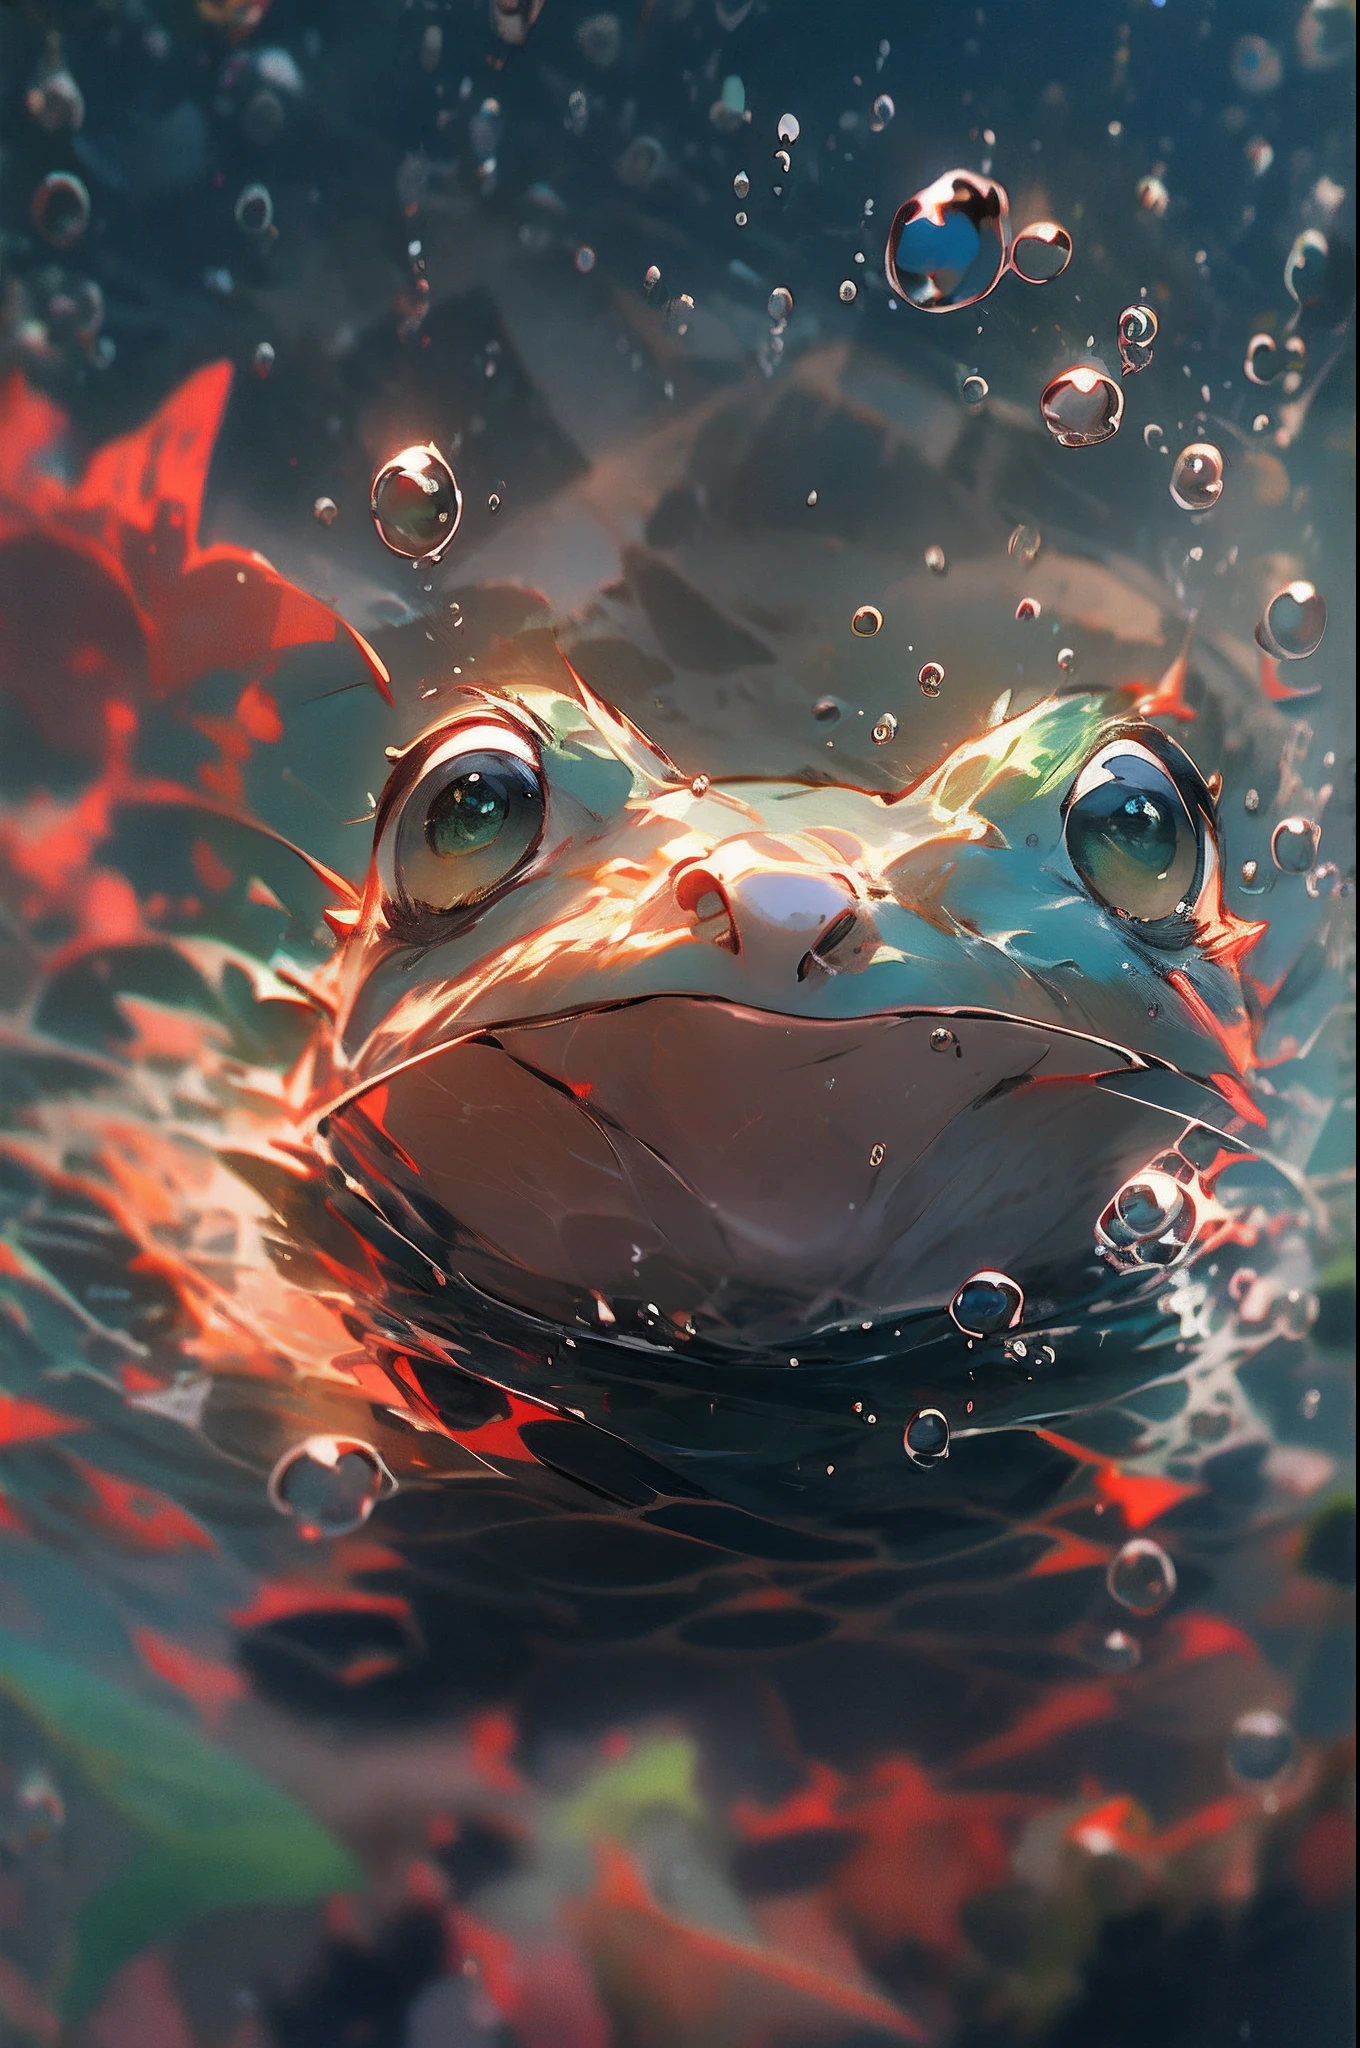 1隻可愛的青蛙, 臉部特寫, 肖像, 毛茸茸的, 無人, 在水裡, 海底, 游泳, 水泡, 氣泡, 更多細節, 飽和的顏色, 可愛的微笑, 最好的品質, 8K, 高飽和度